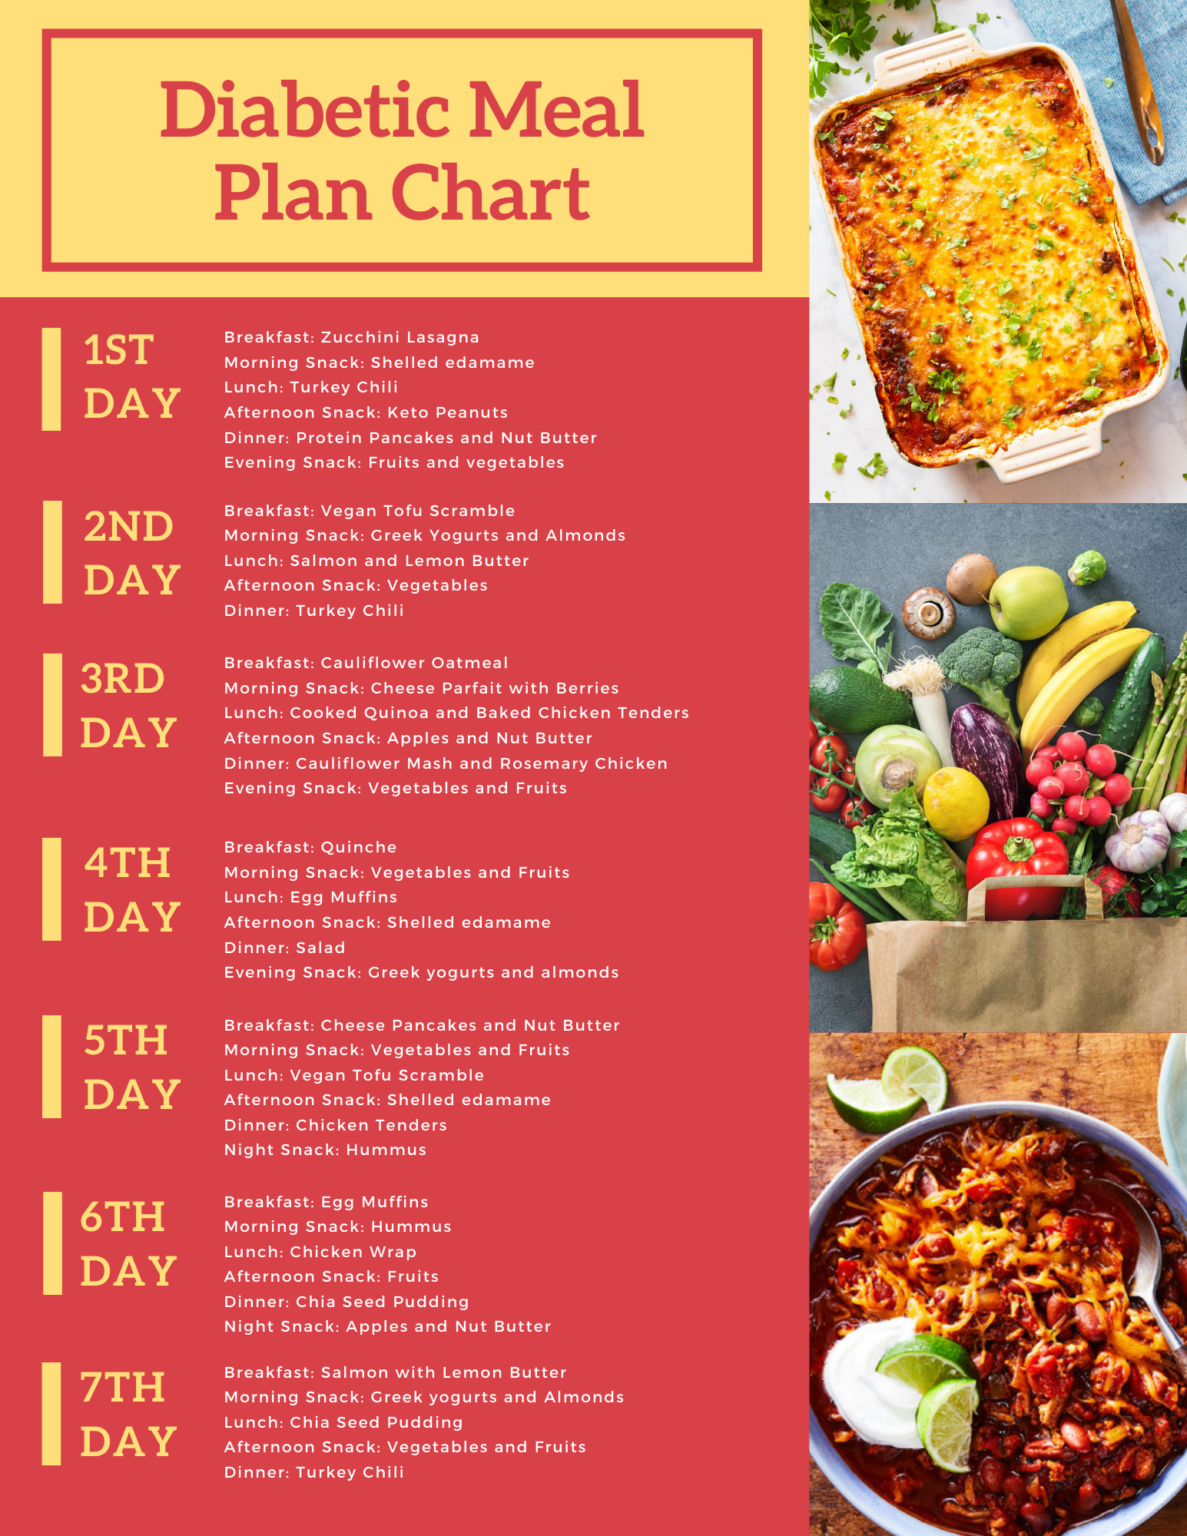 diabetes meal plan chart